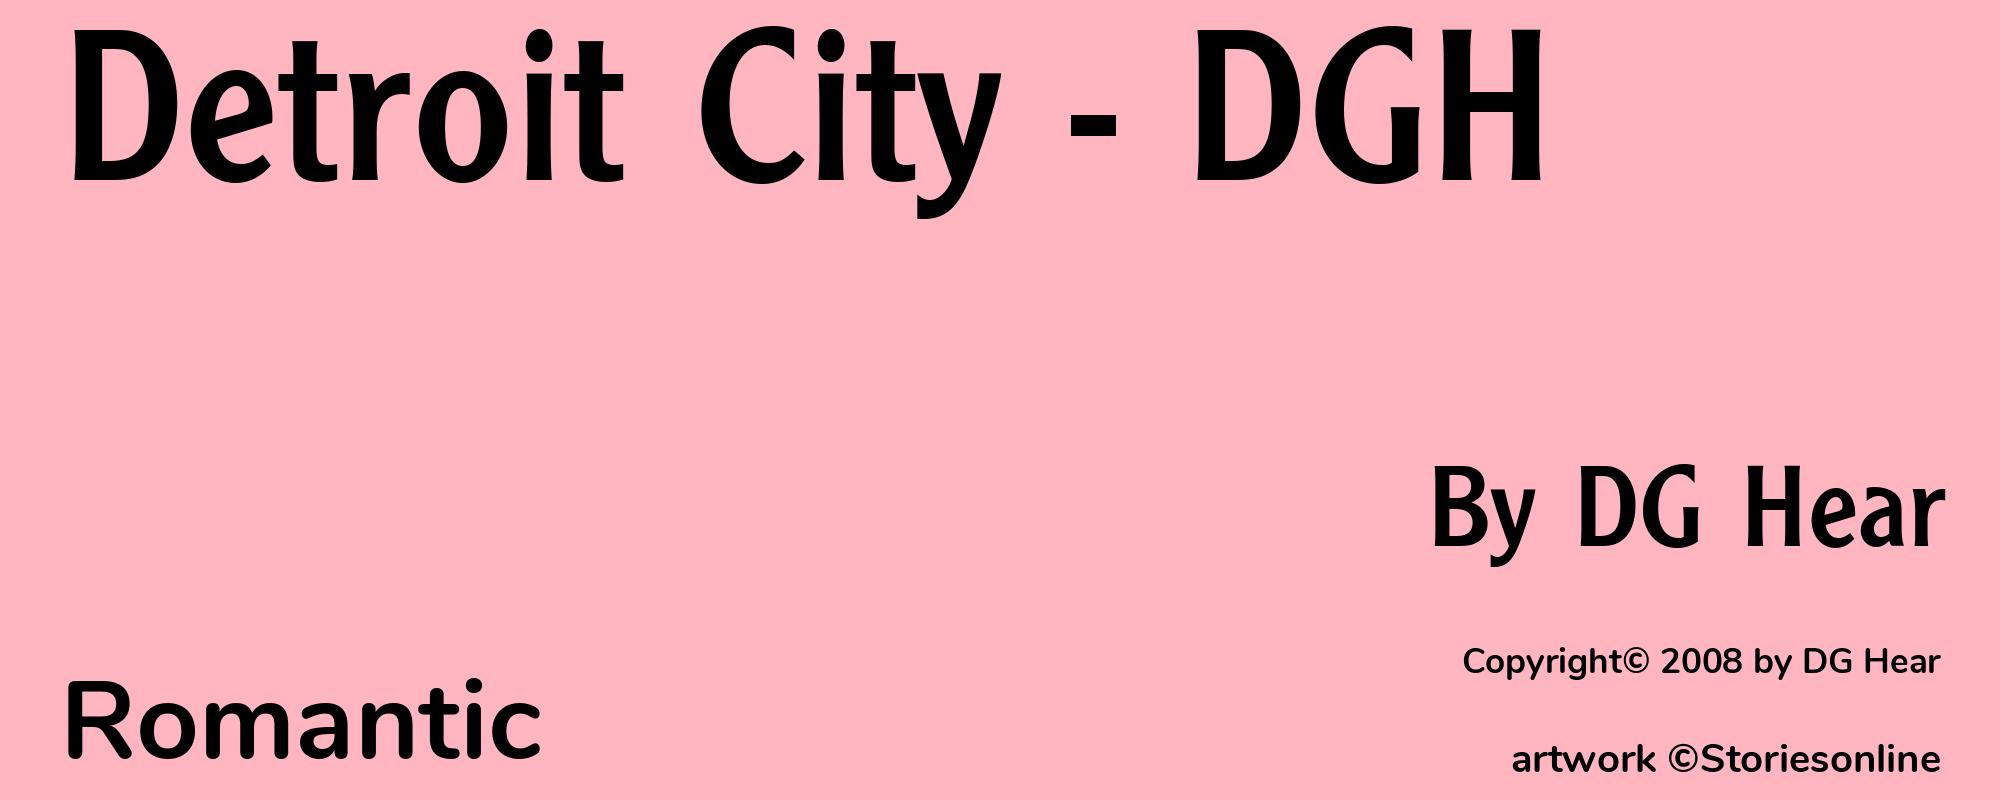 Detroit City - DGH - Cover